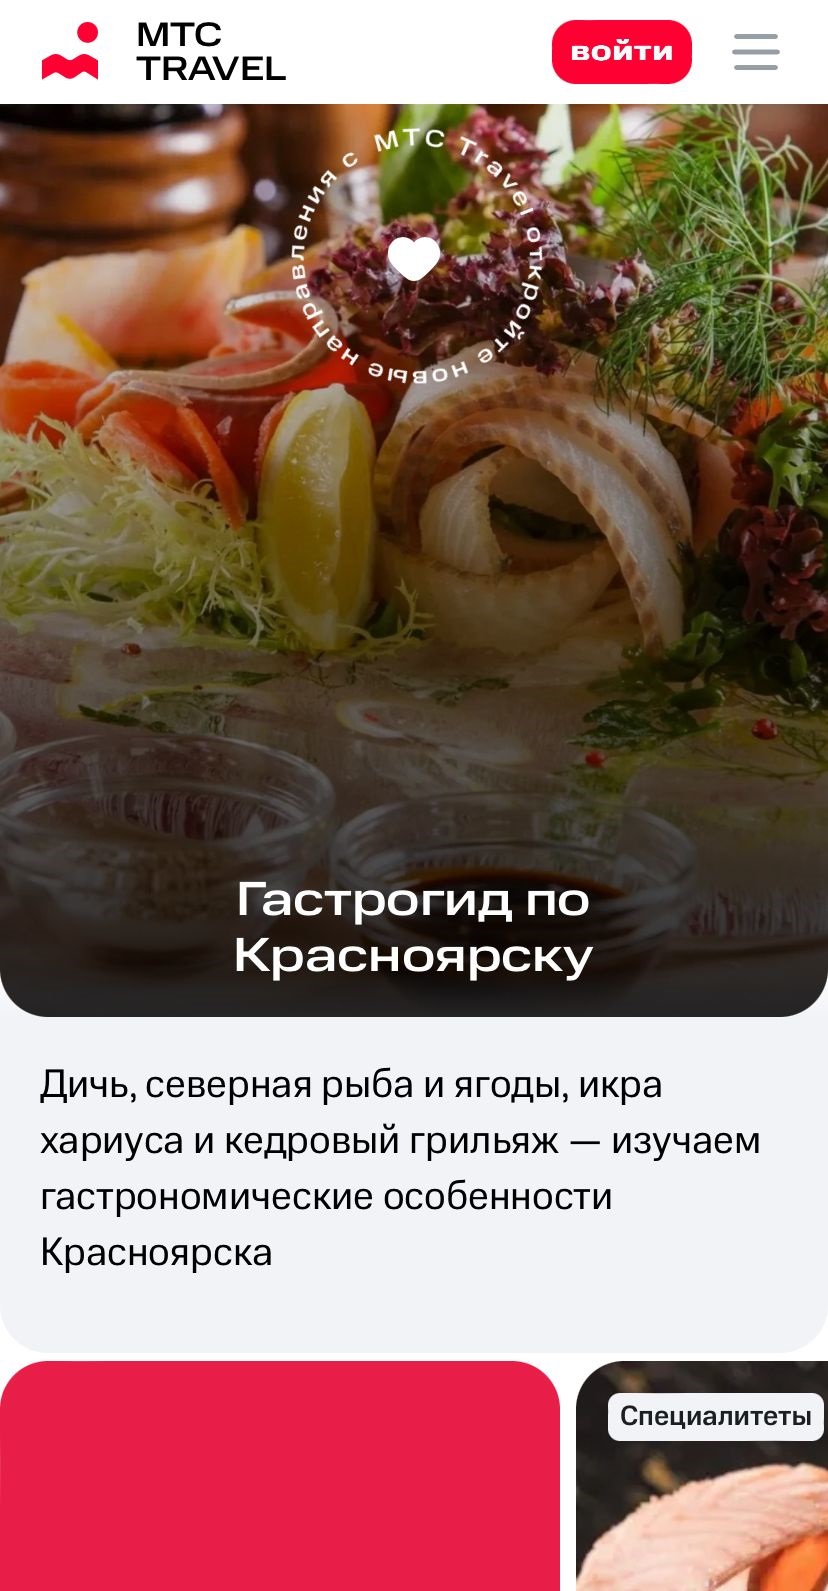 Приезжающих к Красноярск якутян встретит первый цифровой гид по сибирской кухне от МТС